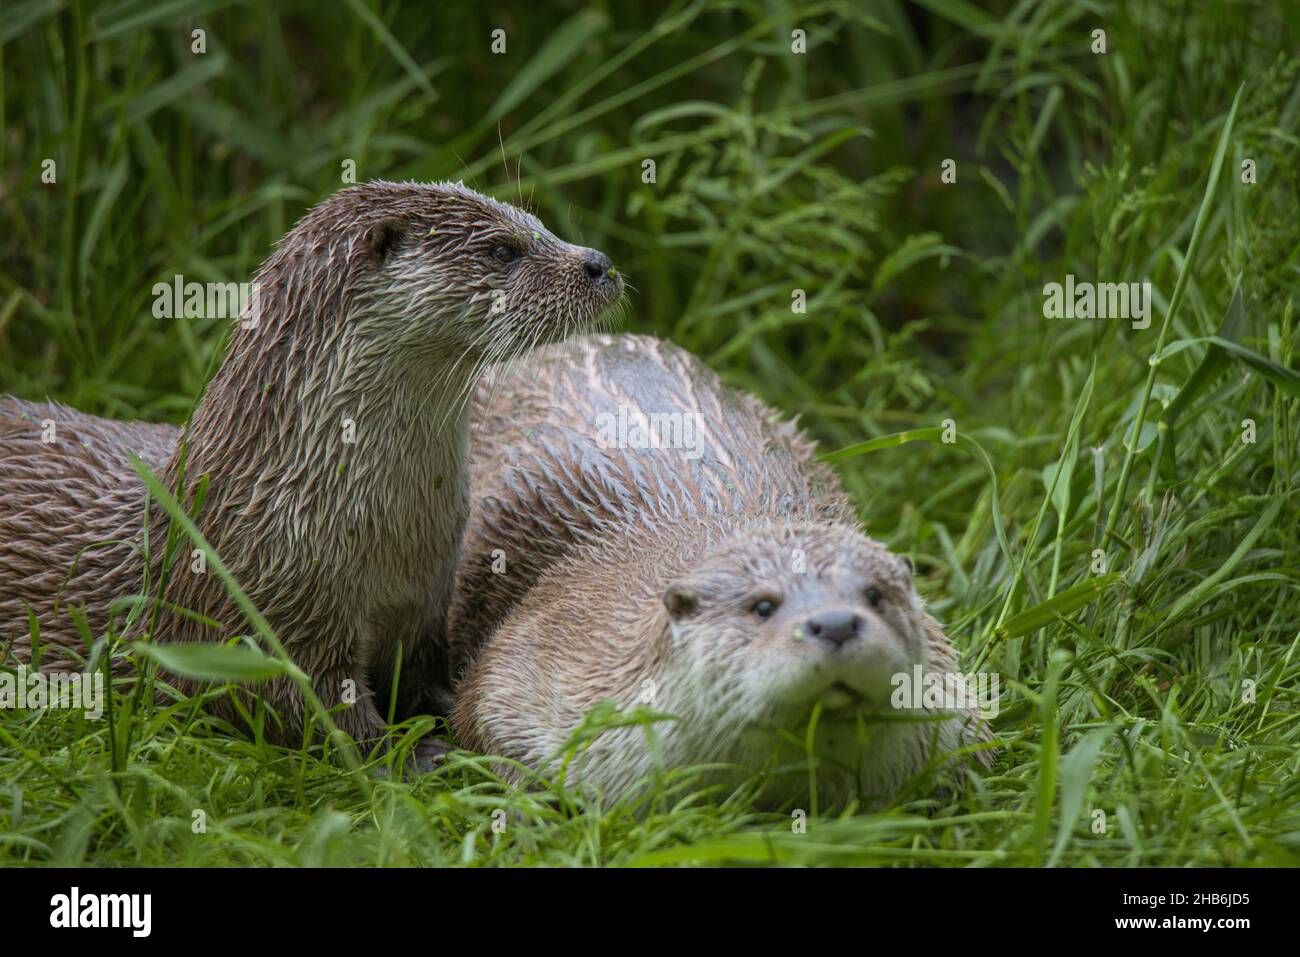 European river otter, European Otter, Eurasian Otter (Lutra lutra), Two otters on shore, Germany Stock Photo